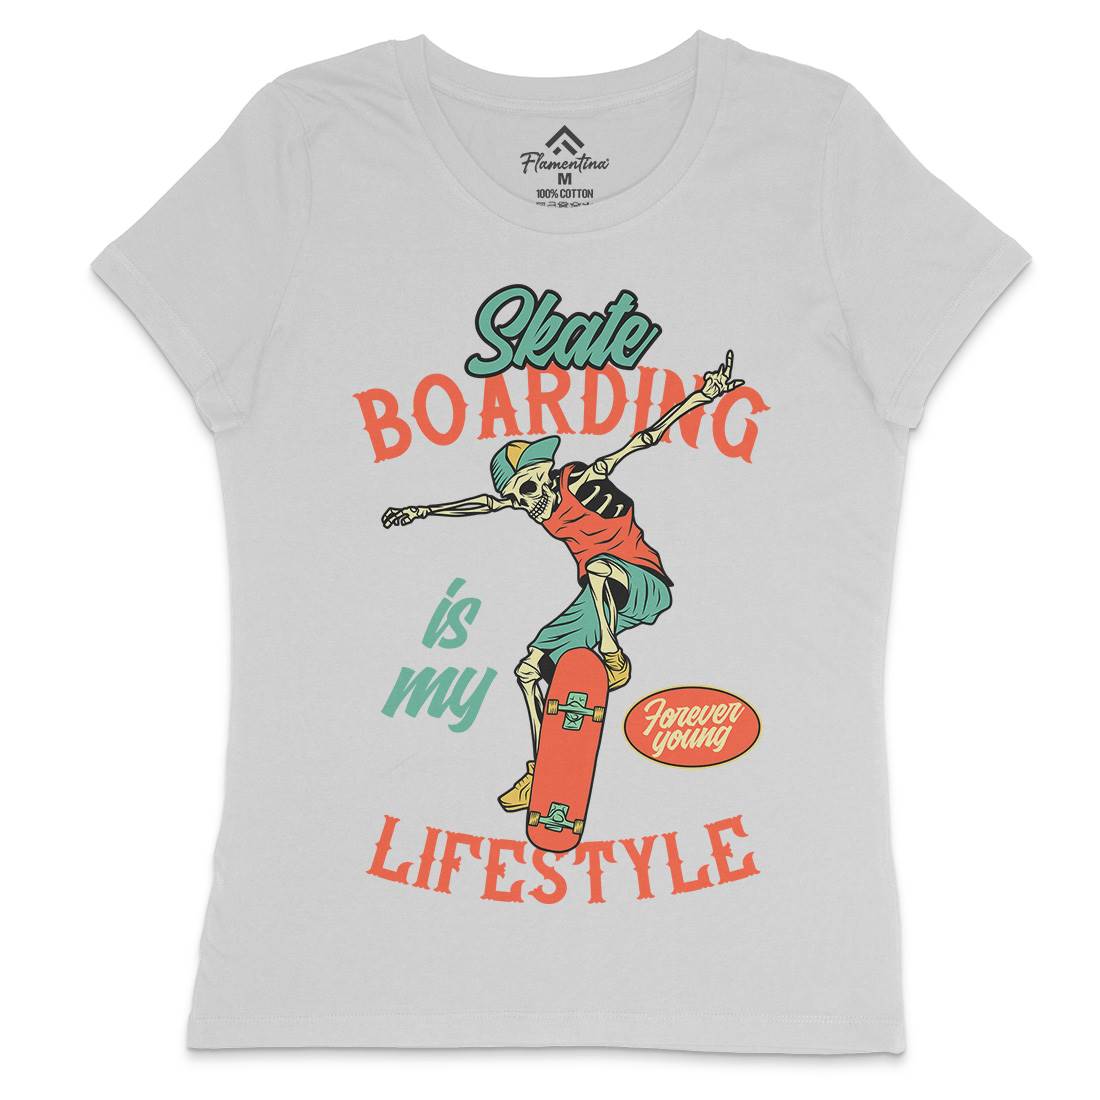 Skateboarding Lifestyle Womens Crew Neck T-Shirt Skate D976